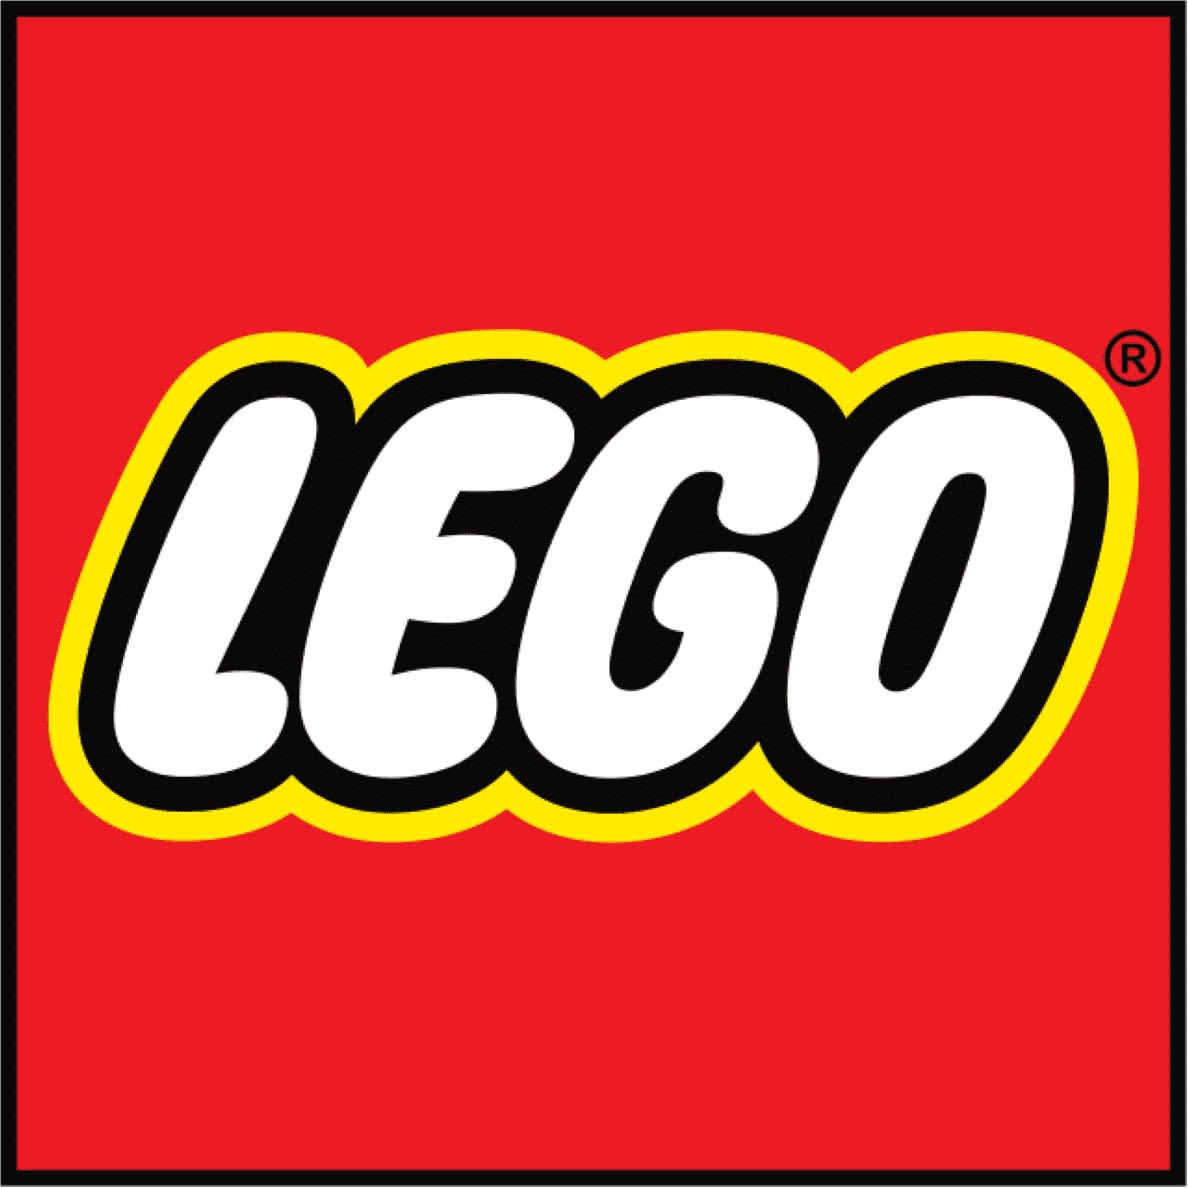 Darstellung des LEGO Logos auf rotem Grund